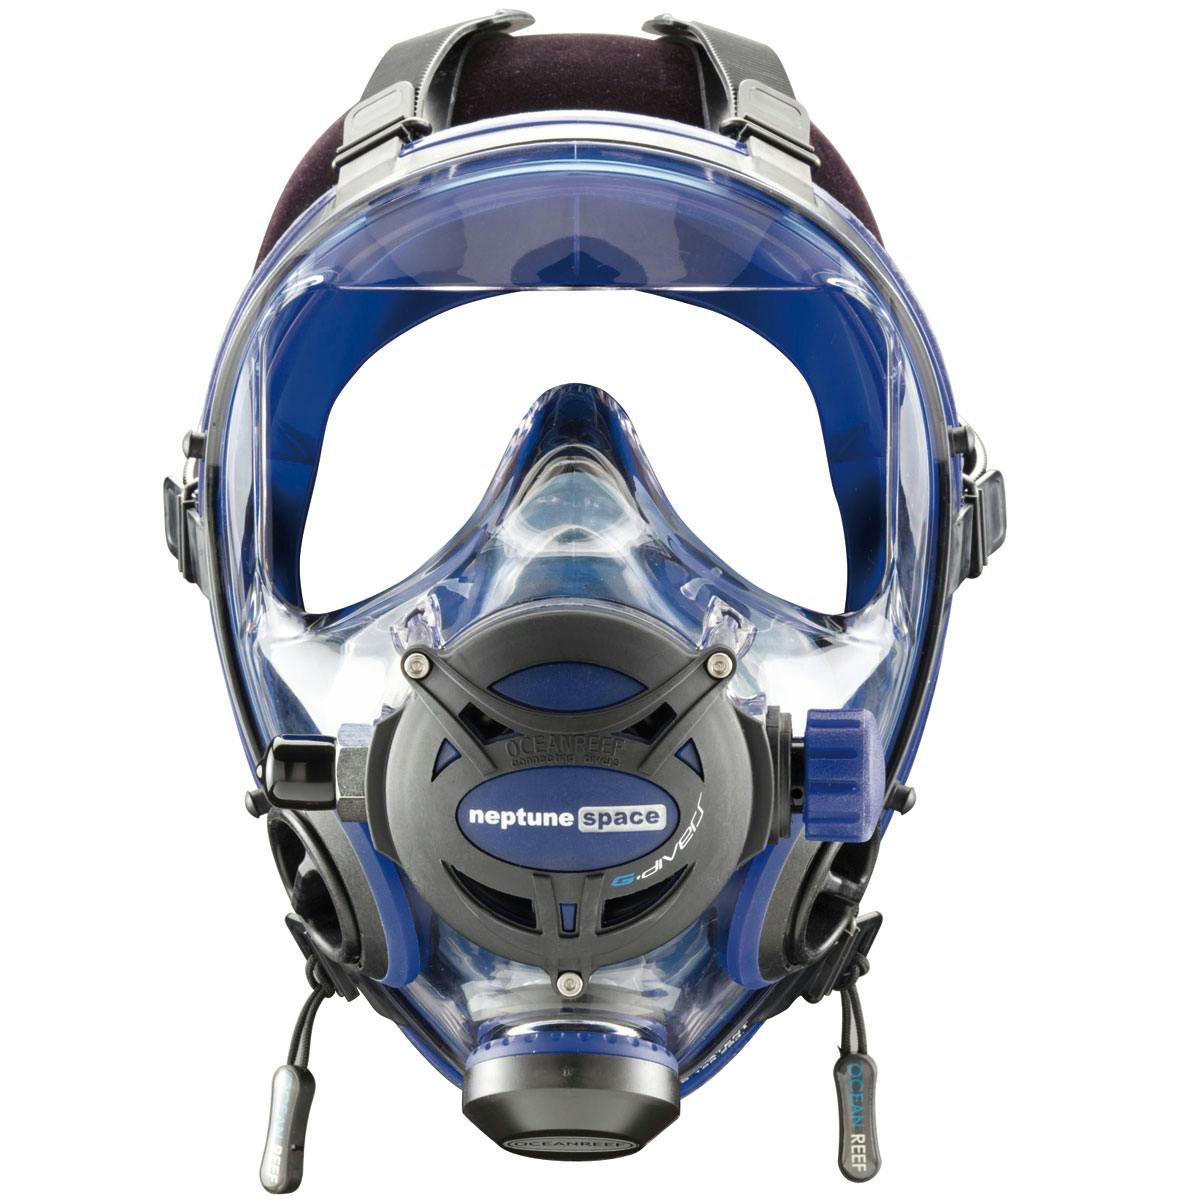 Ocean Reef Neptune Space G Full Face Mask - Cobalt